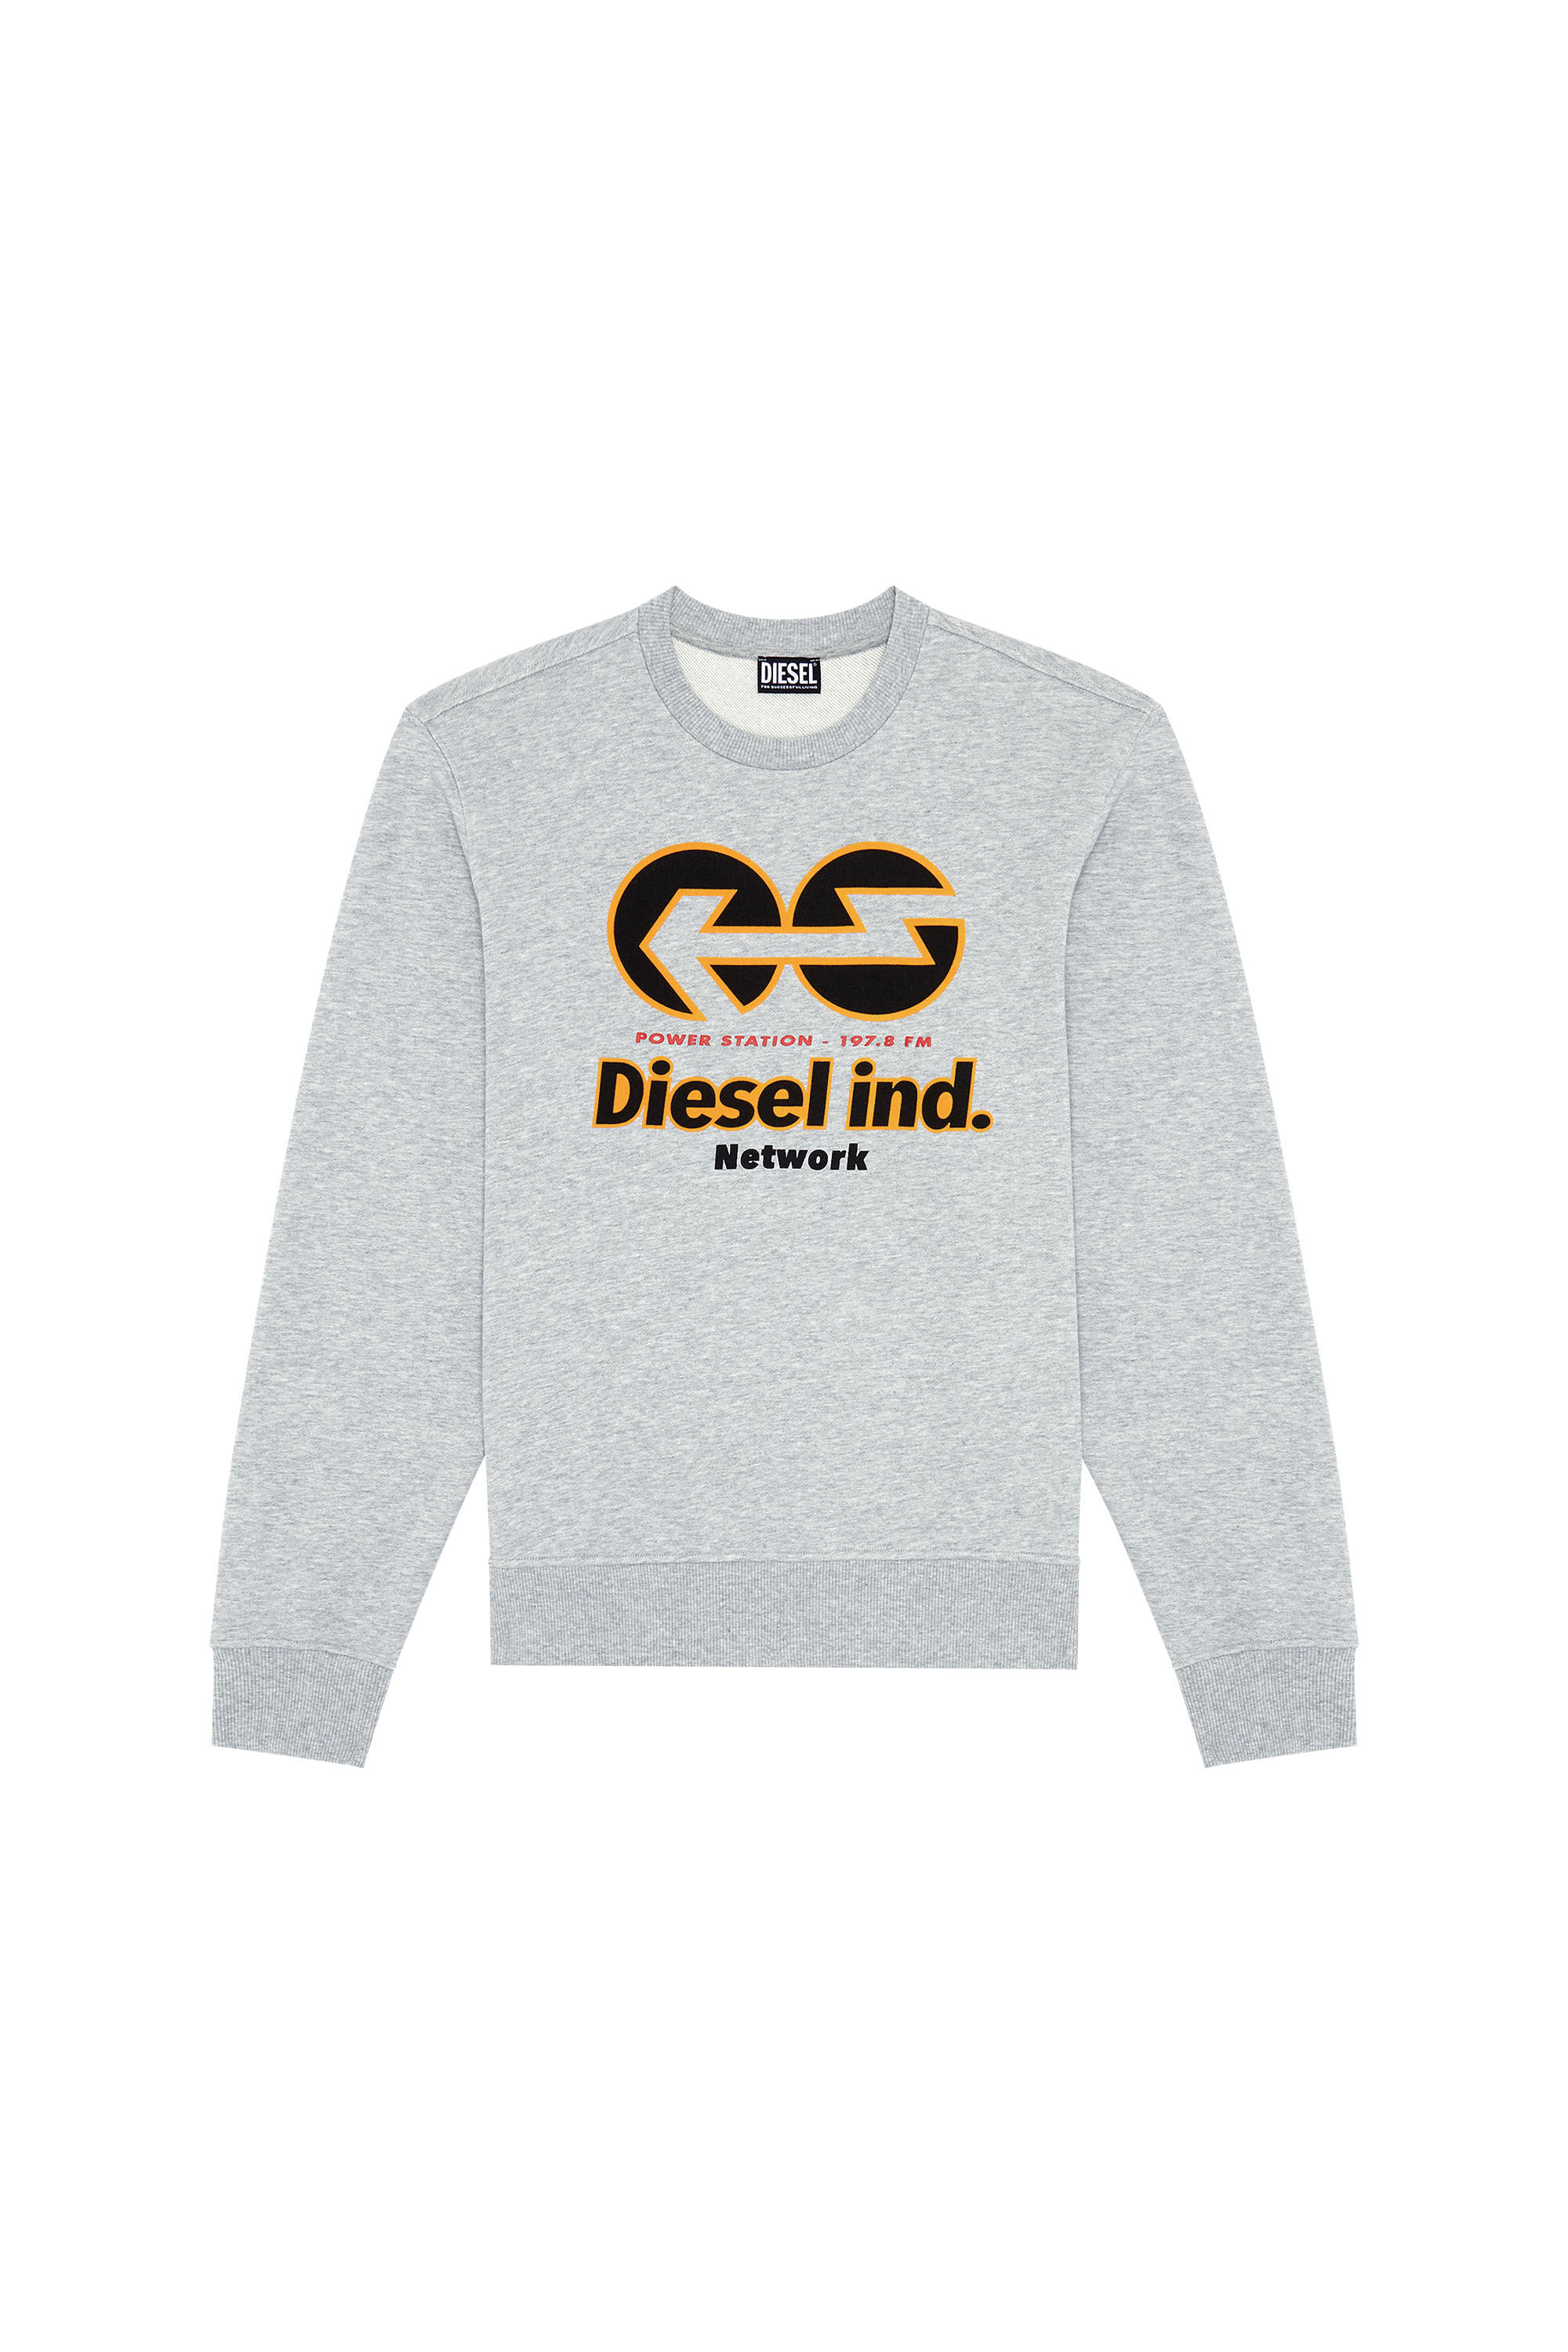 Diesel - S-GINN-E1, Gris - Image 2